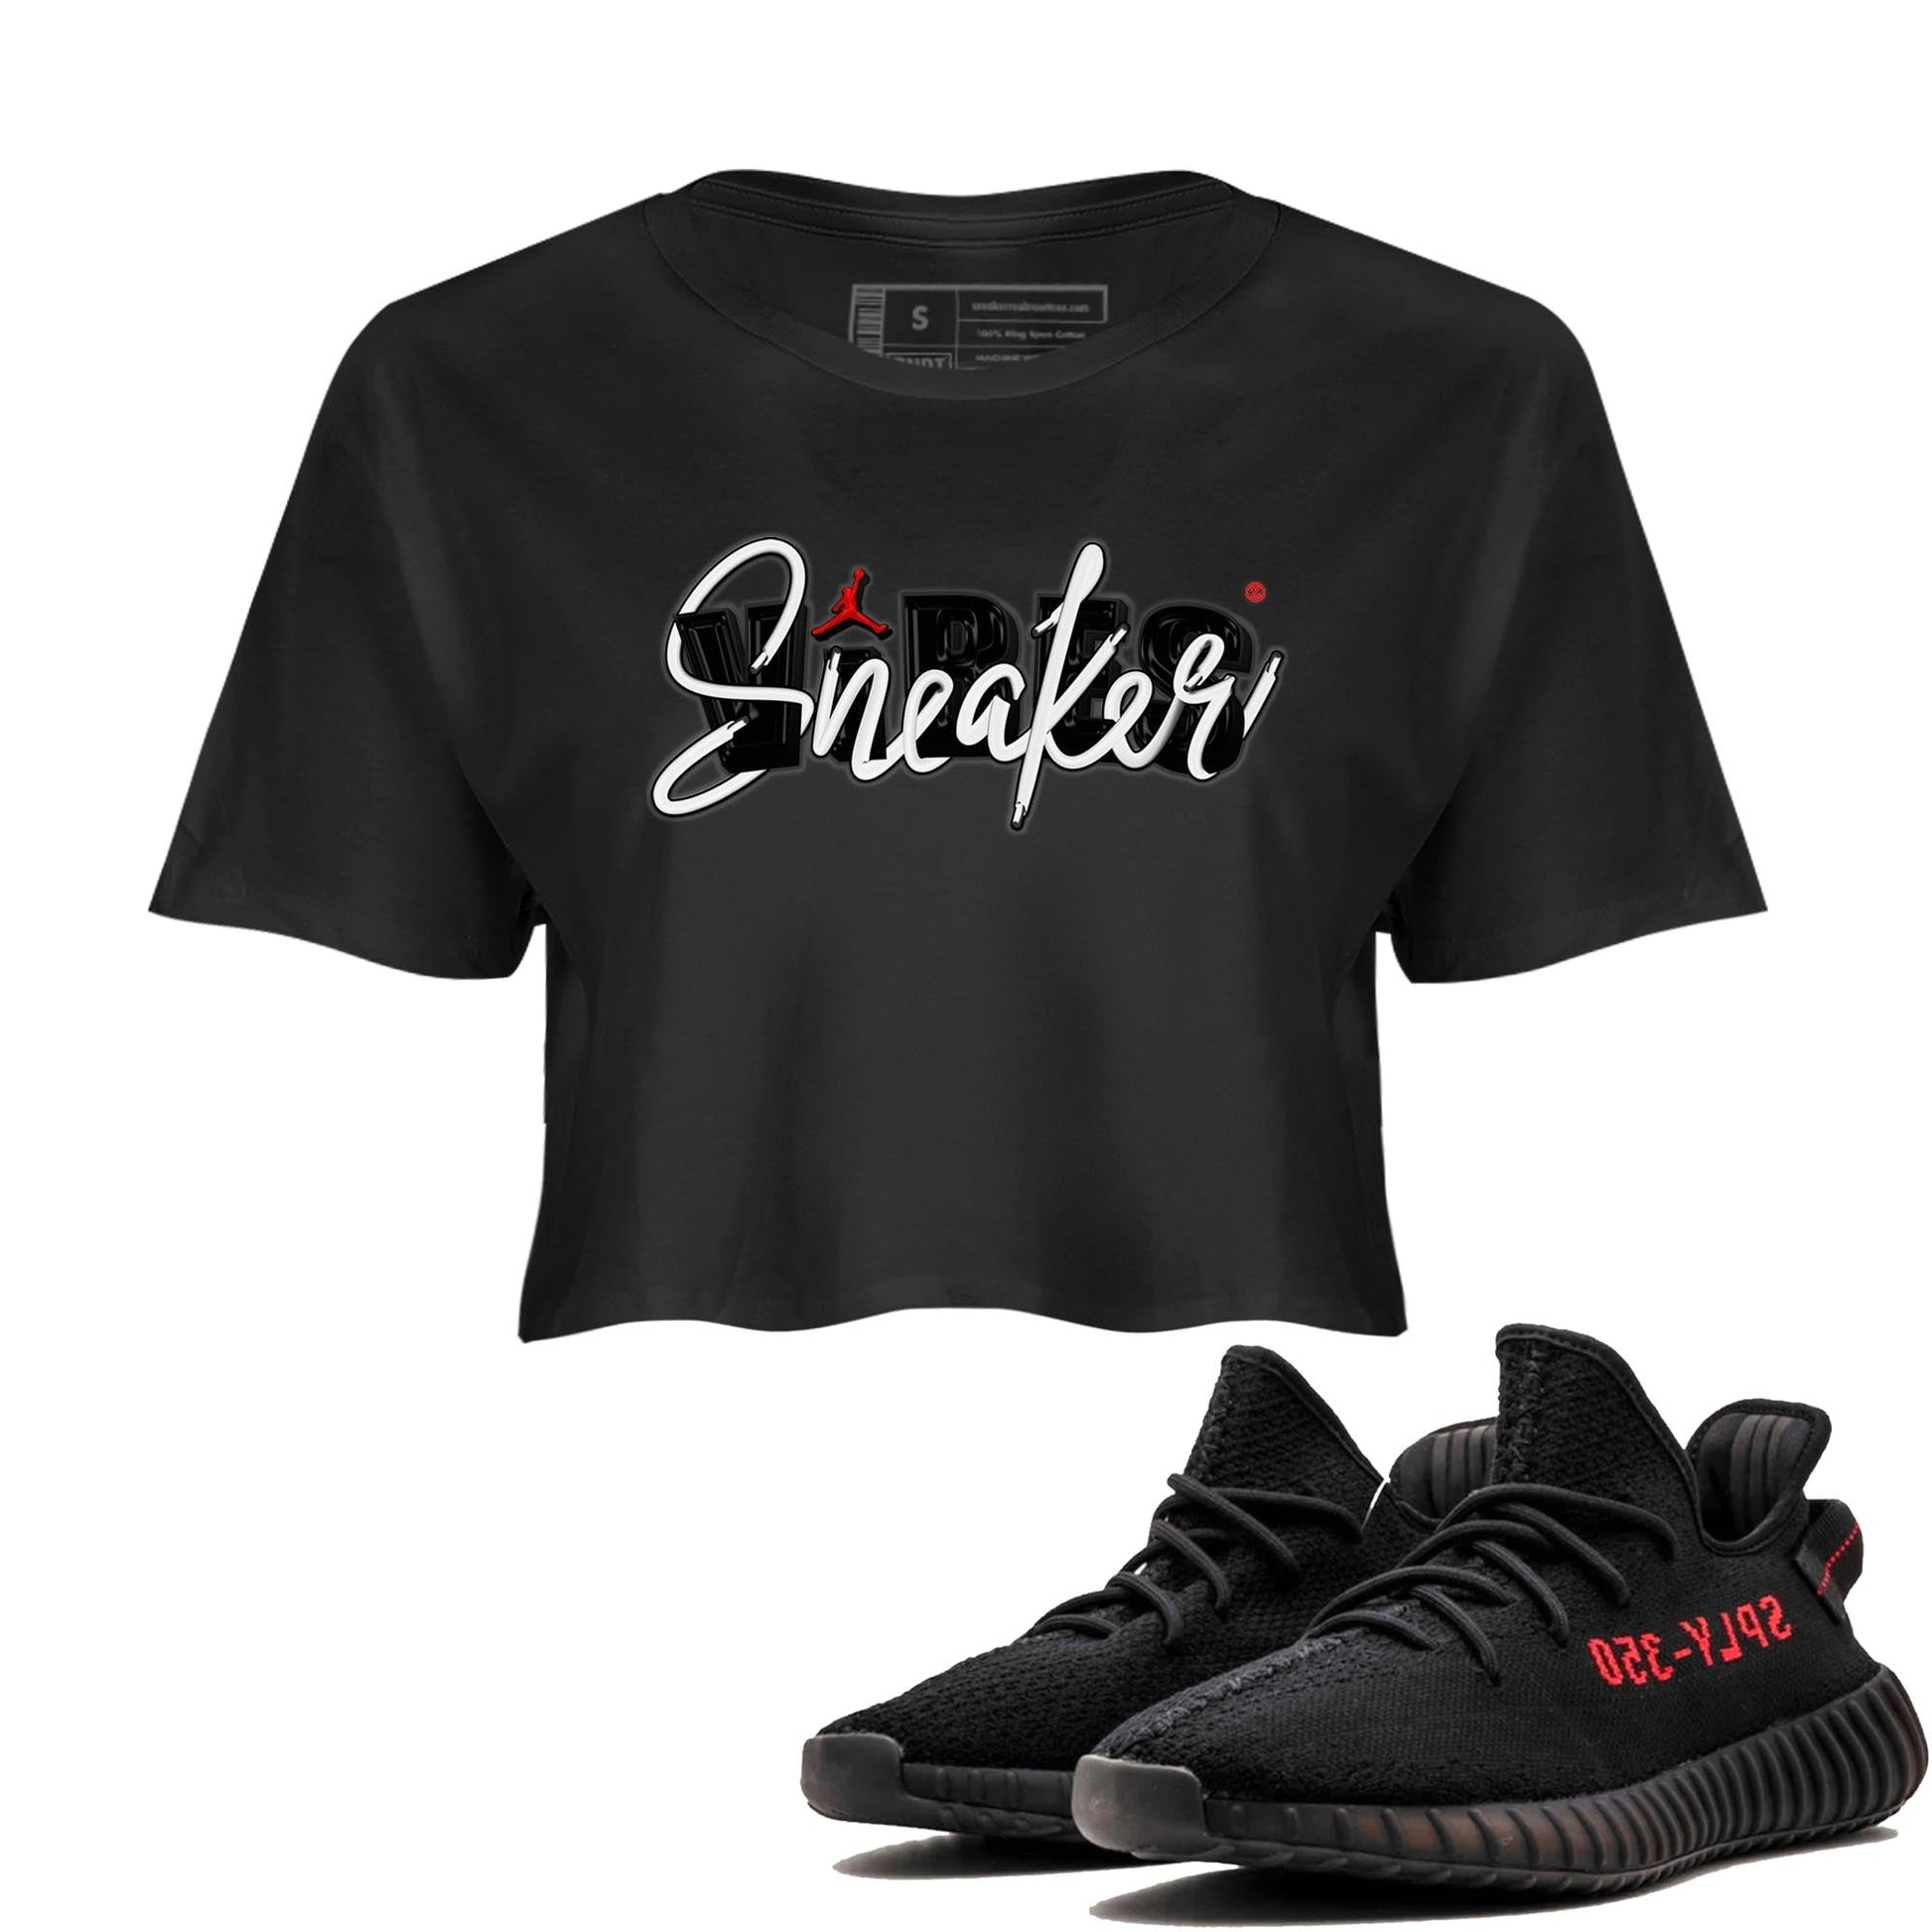 Yeezy 350 Bred shirt to match jordans Sneaker Vibes sneaker tees Yeezy Boost 350 V2 Bred SNRT Sneaker Release Tees Black 1 Crop T-Shirt